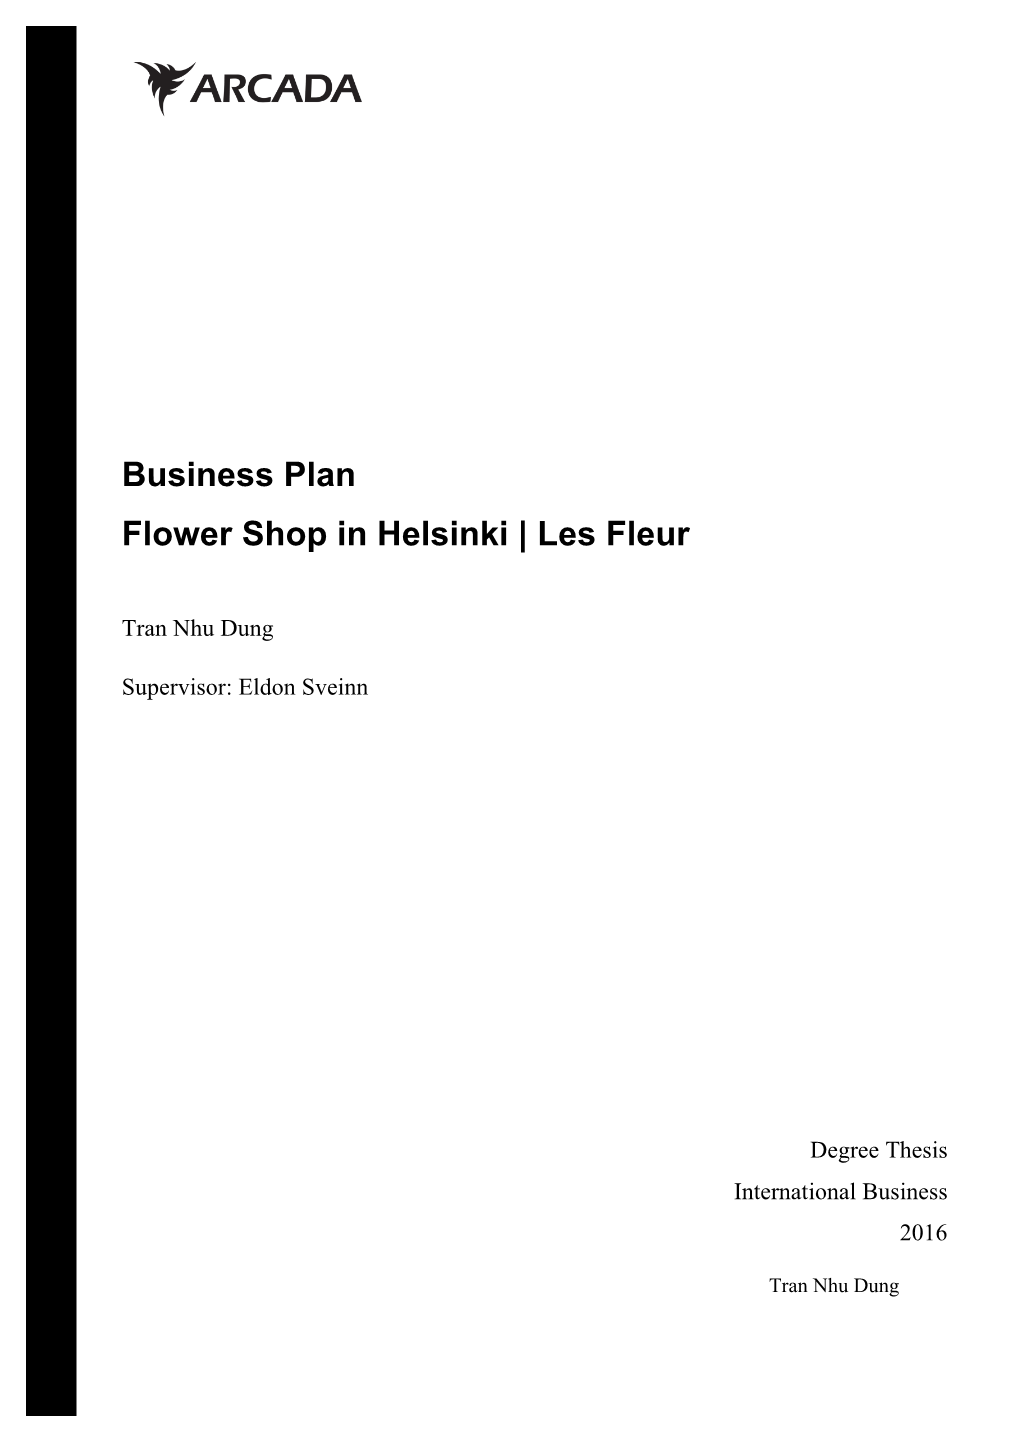 Business Plan Flower Shop in Helsinki | Les Fleur